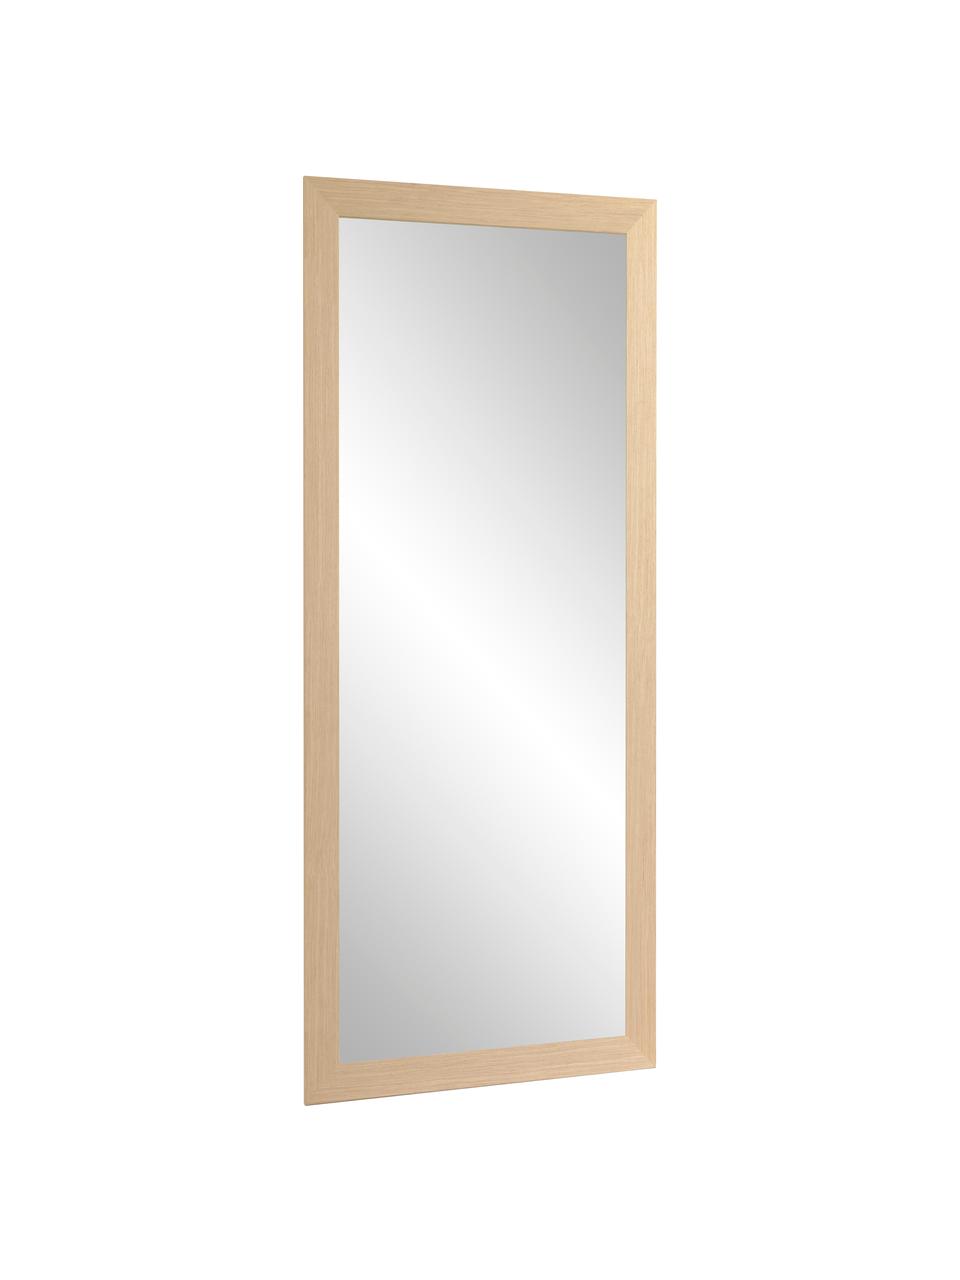 Eckiger Wandspiegel Yvaine mit hellbraunem Holzrahmen, Rahmen: Holz, Spiegelfläche: Spiegelglas, Beige, B 81 x H 181 cm